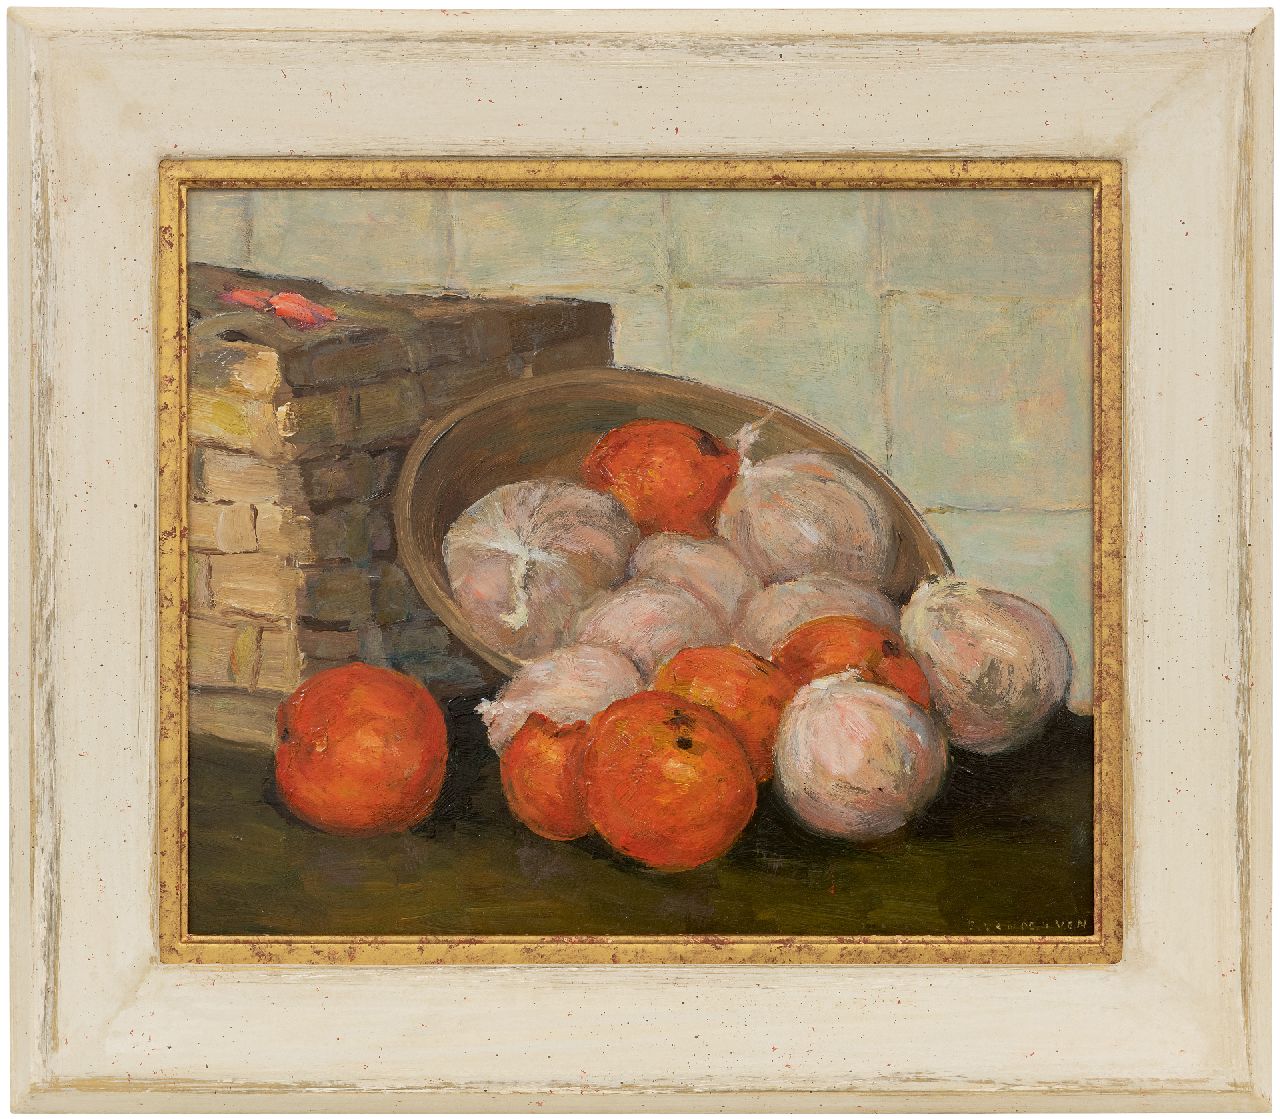 Ven E.E.G. van der | Emanuel Ernest Gerardus 'Manus' van der Ven | Schilderijen te koop aangeboden | Stilleven met mandarijnen, olieverf op board 30,4 x 37,2 cm, gesigneerd rechtsonder